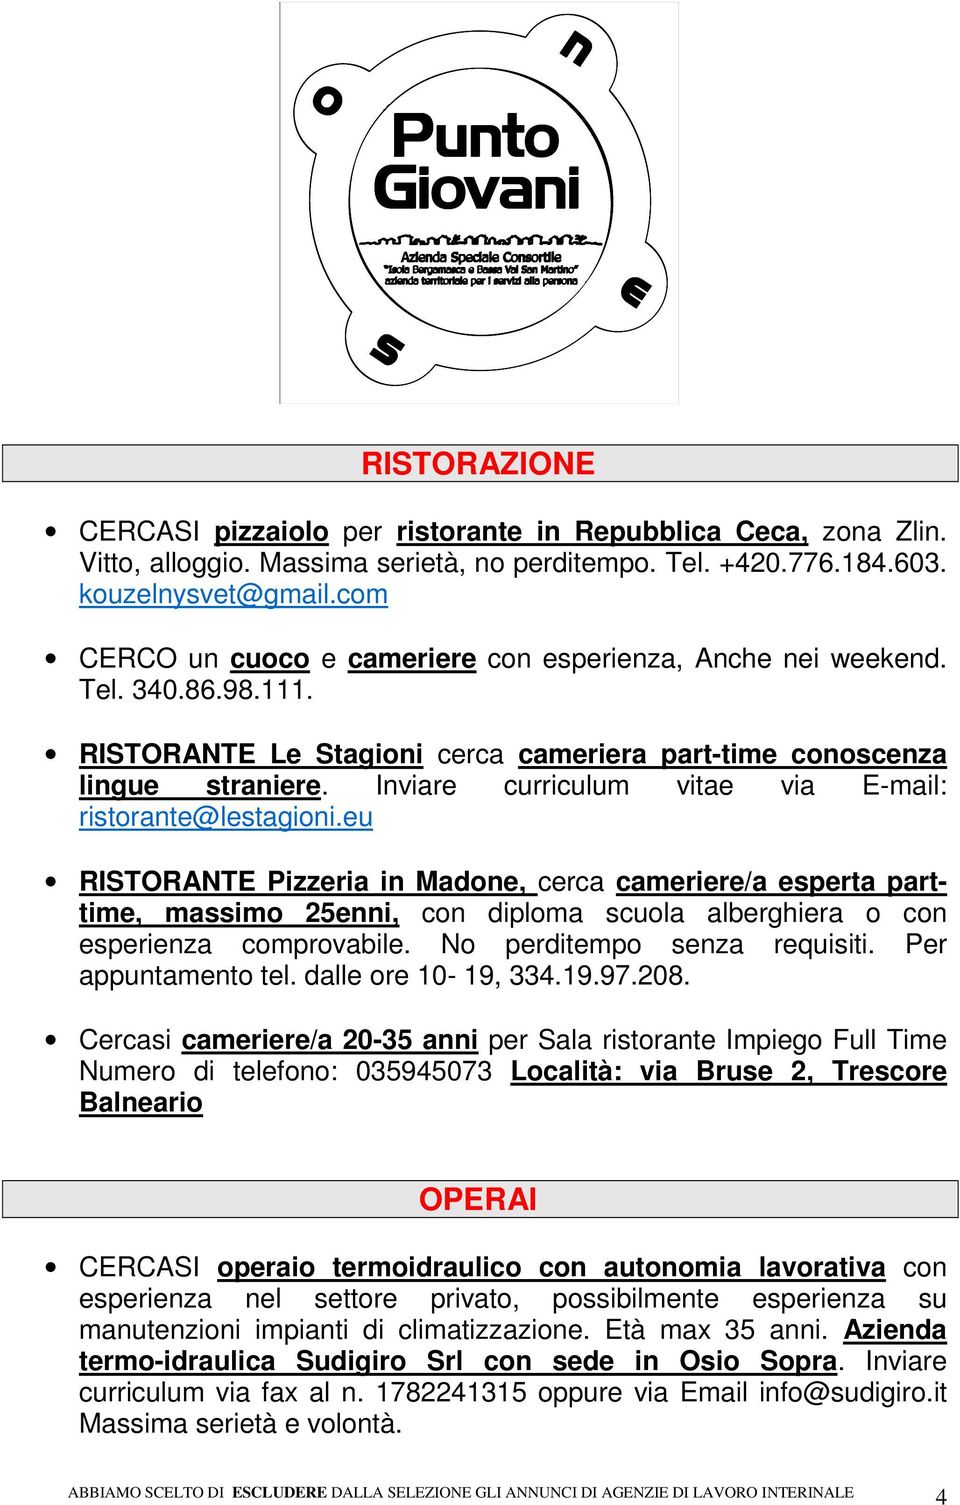 Inviare curriculum vitae via E-mail: ristorante@lestagioni.